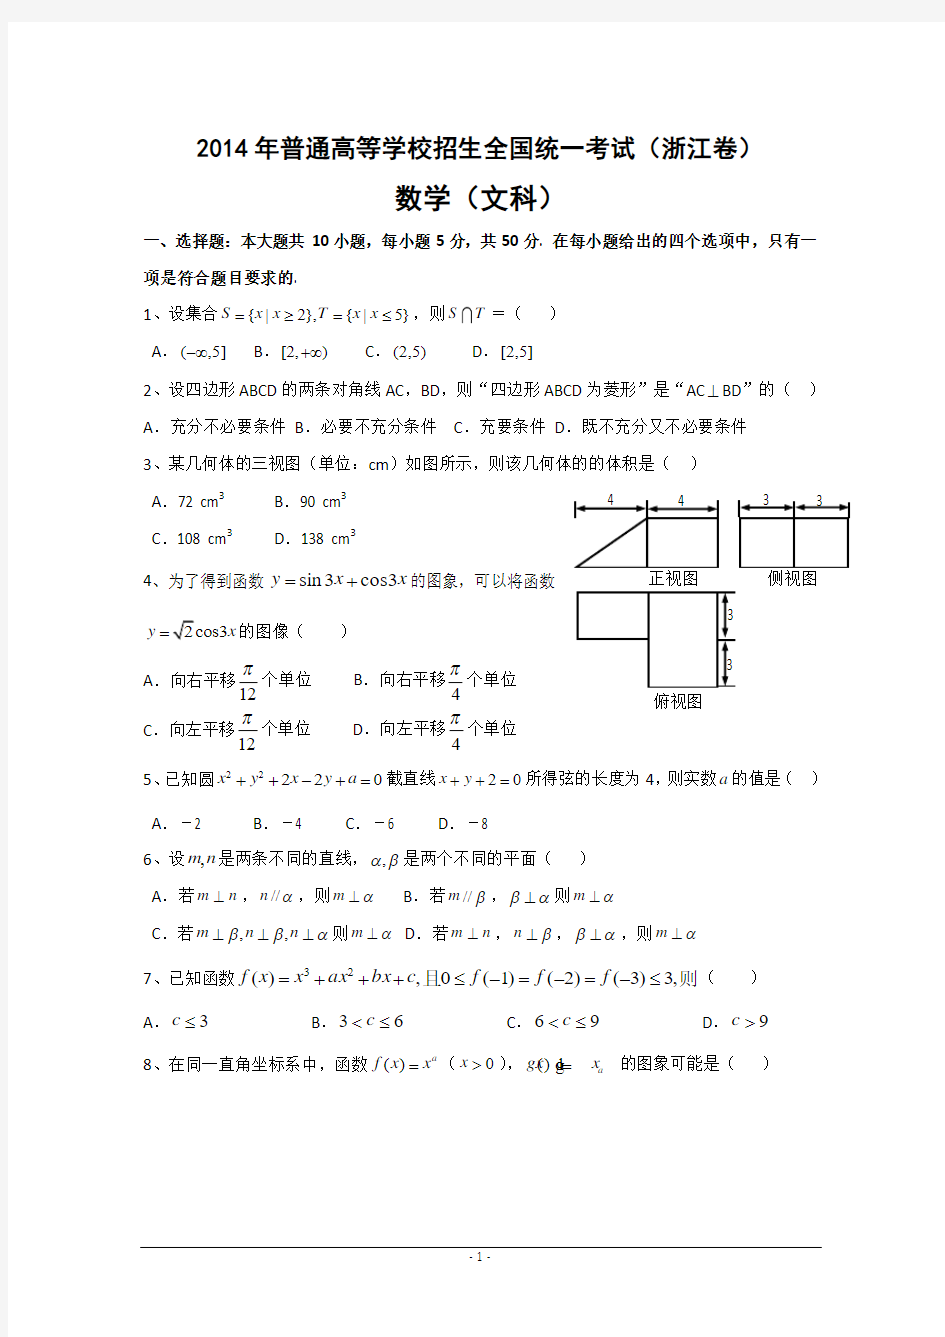 2014年浙江省高考数学文科真题试题及答案解析(完整版)